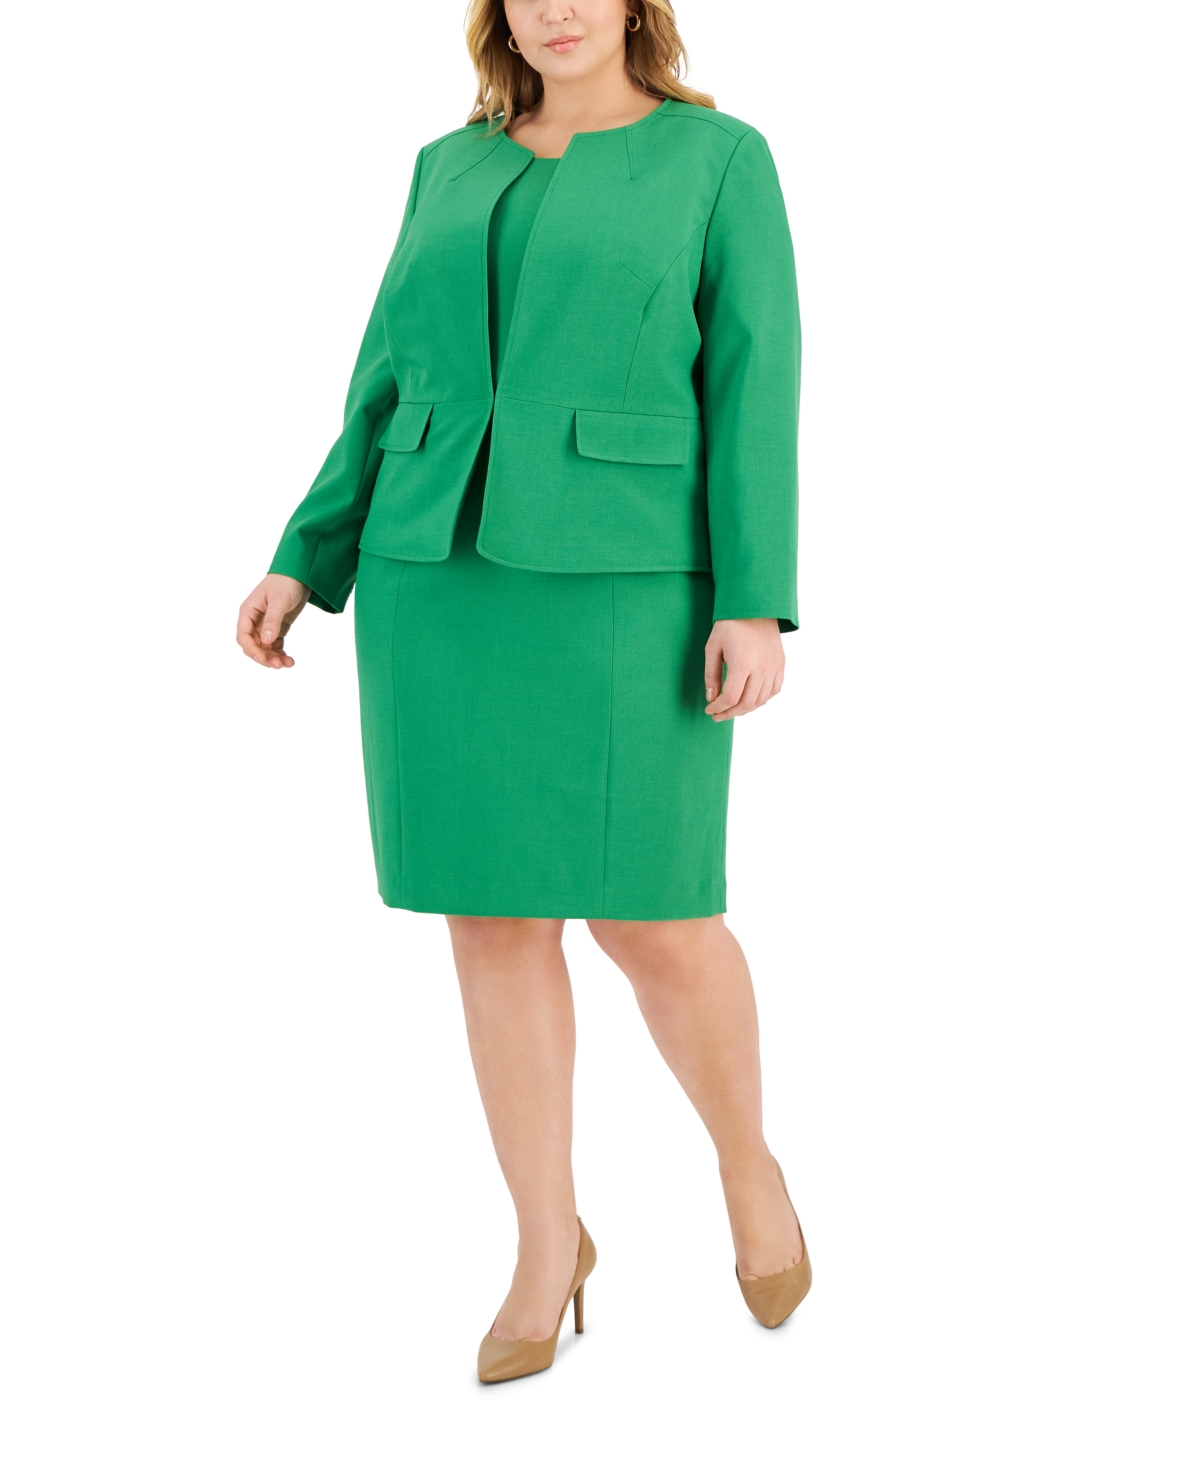 Le Suit Plus Size Cardigan Jacket & Sheath Dress In Verde